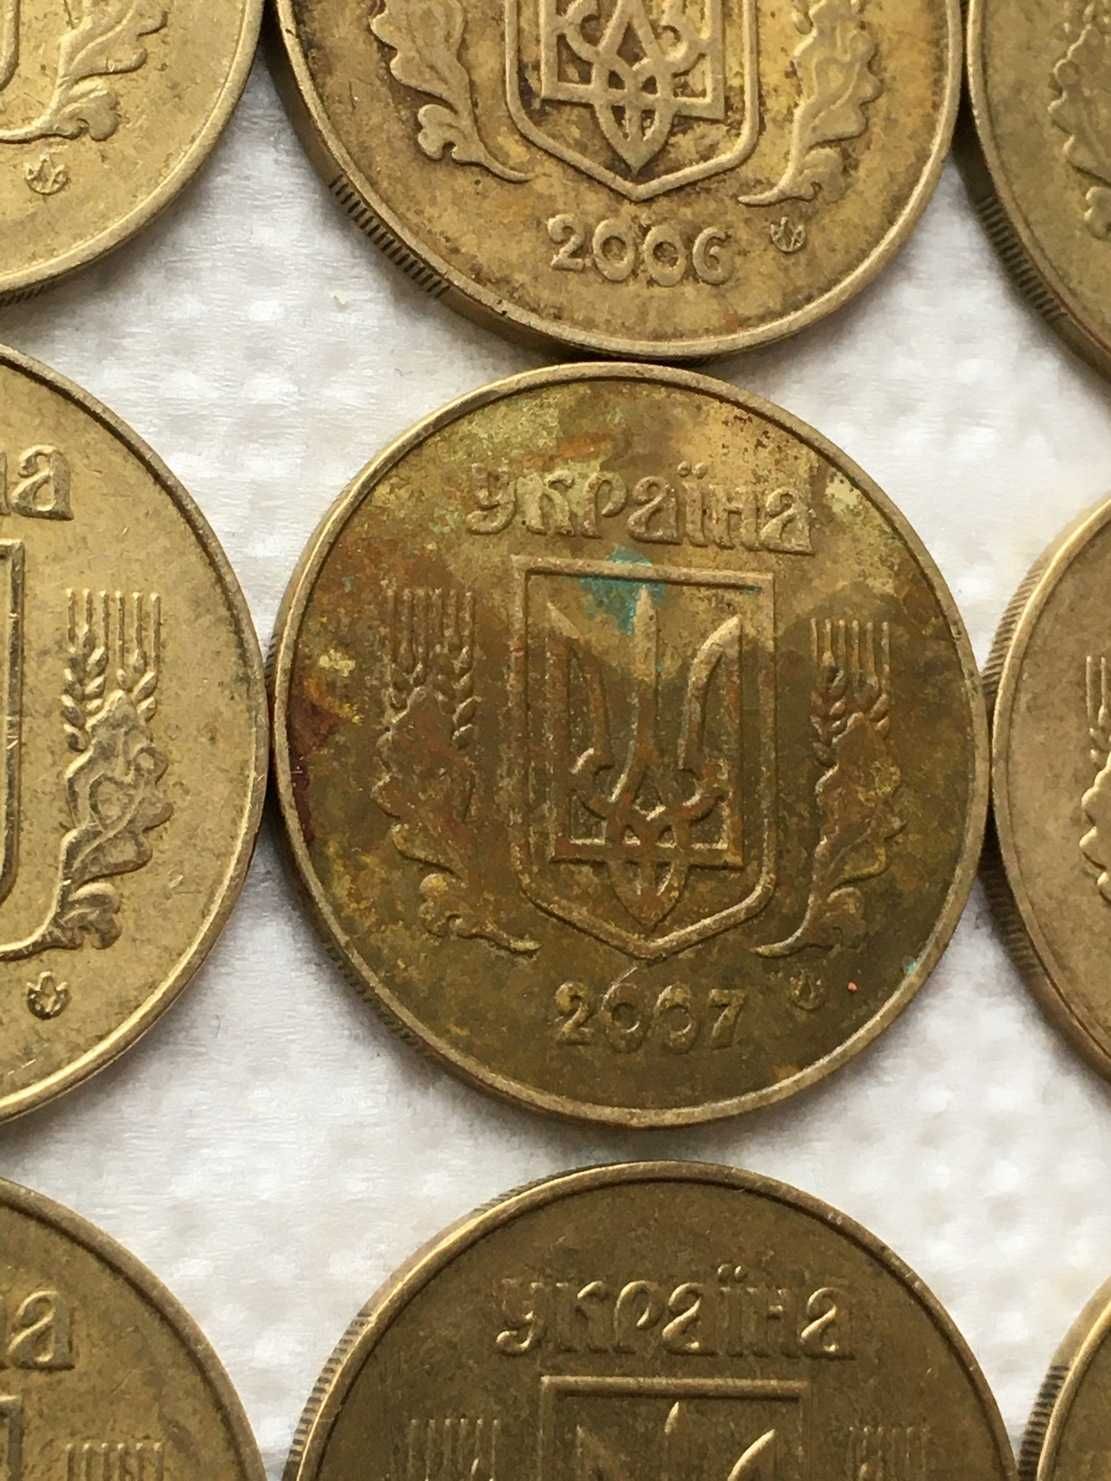 Монета 50 копеек 2007 года. Желтый металл.